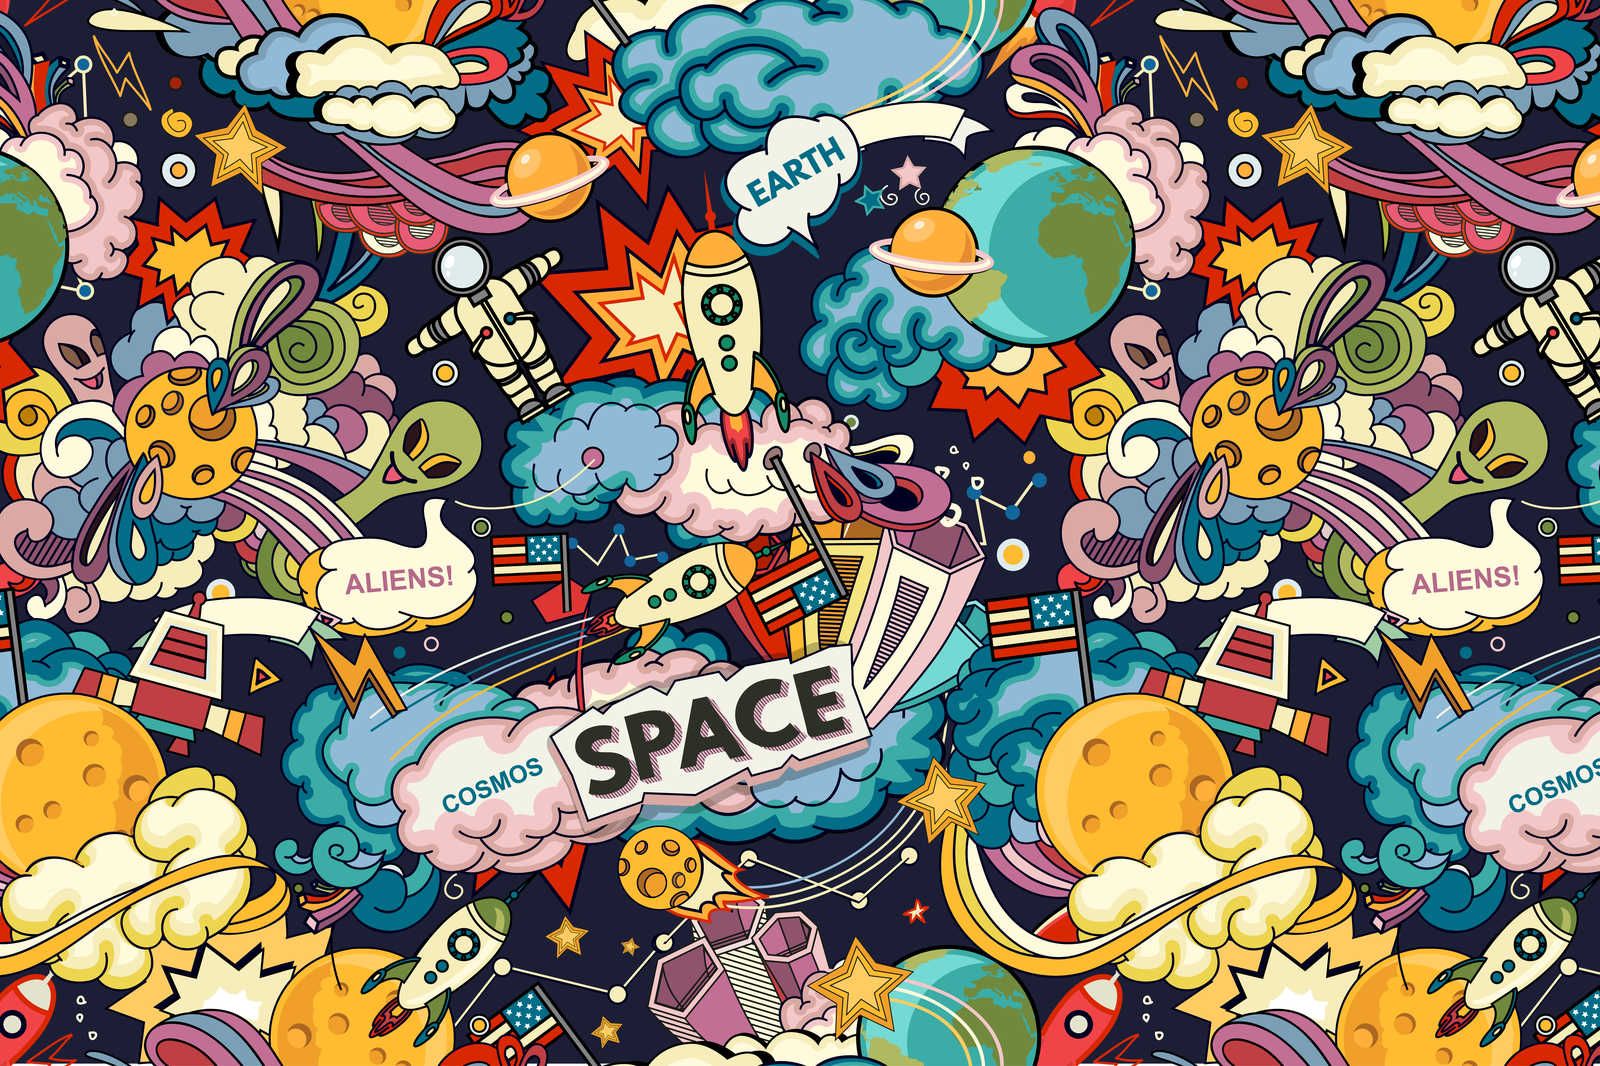             Toile Collage de l'univers dans le style bande dessinée - 90 cm x 60 cm
        